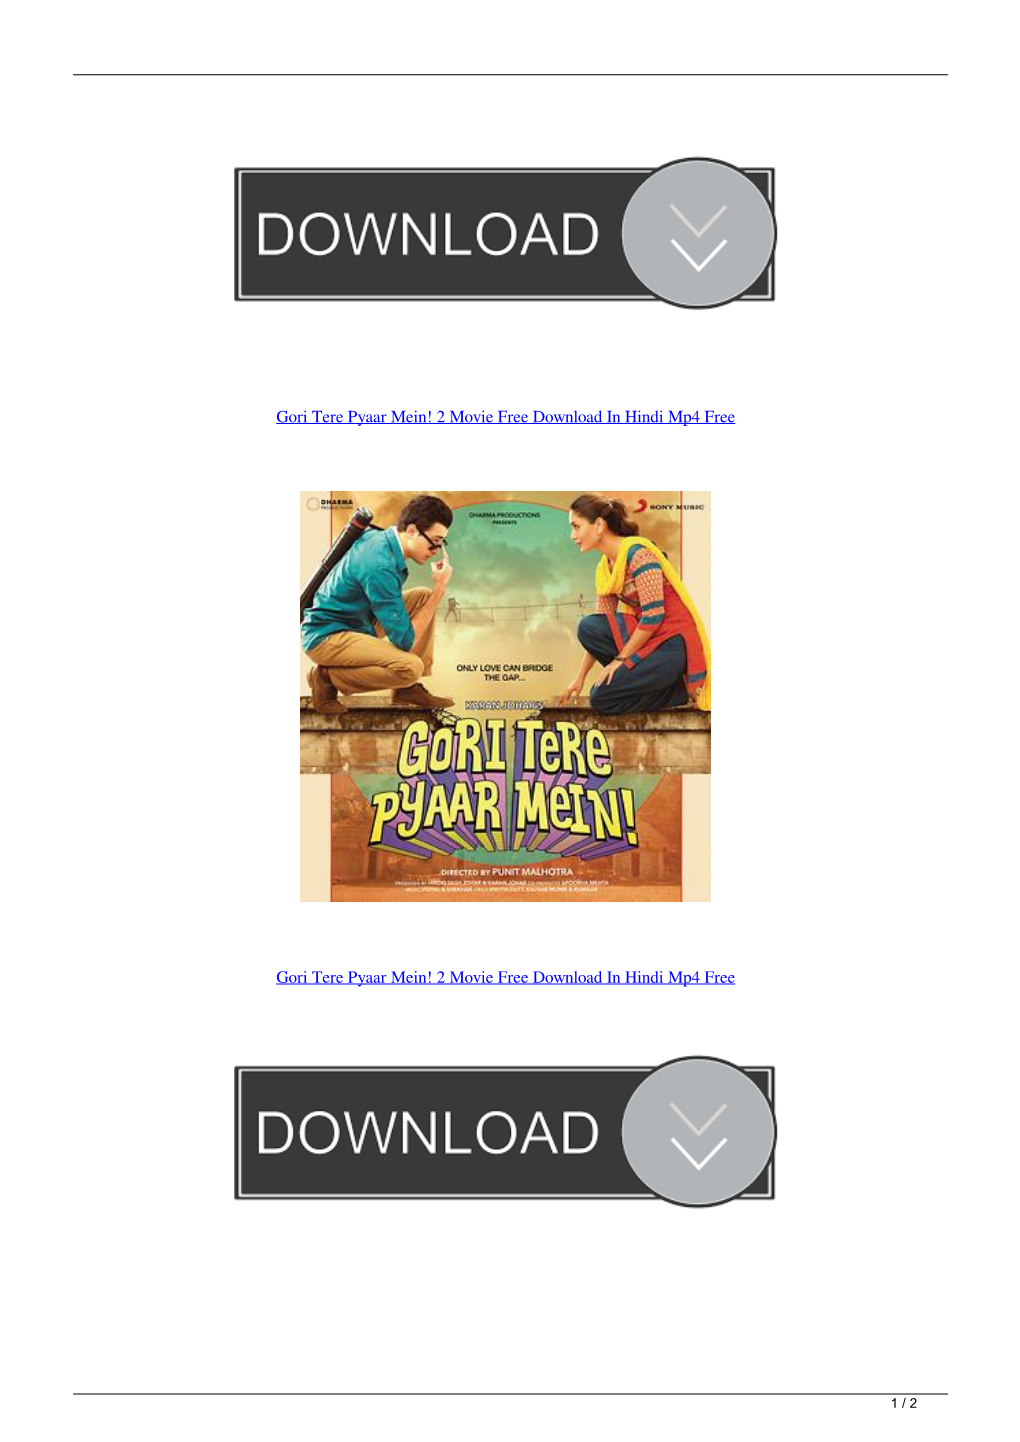 Gori Tere Pyaar Mein 2 Movie Free Download in Hindi Mp4 Free